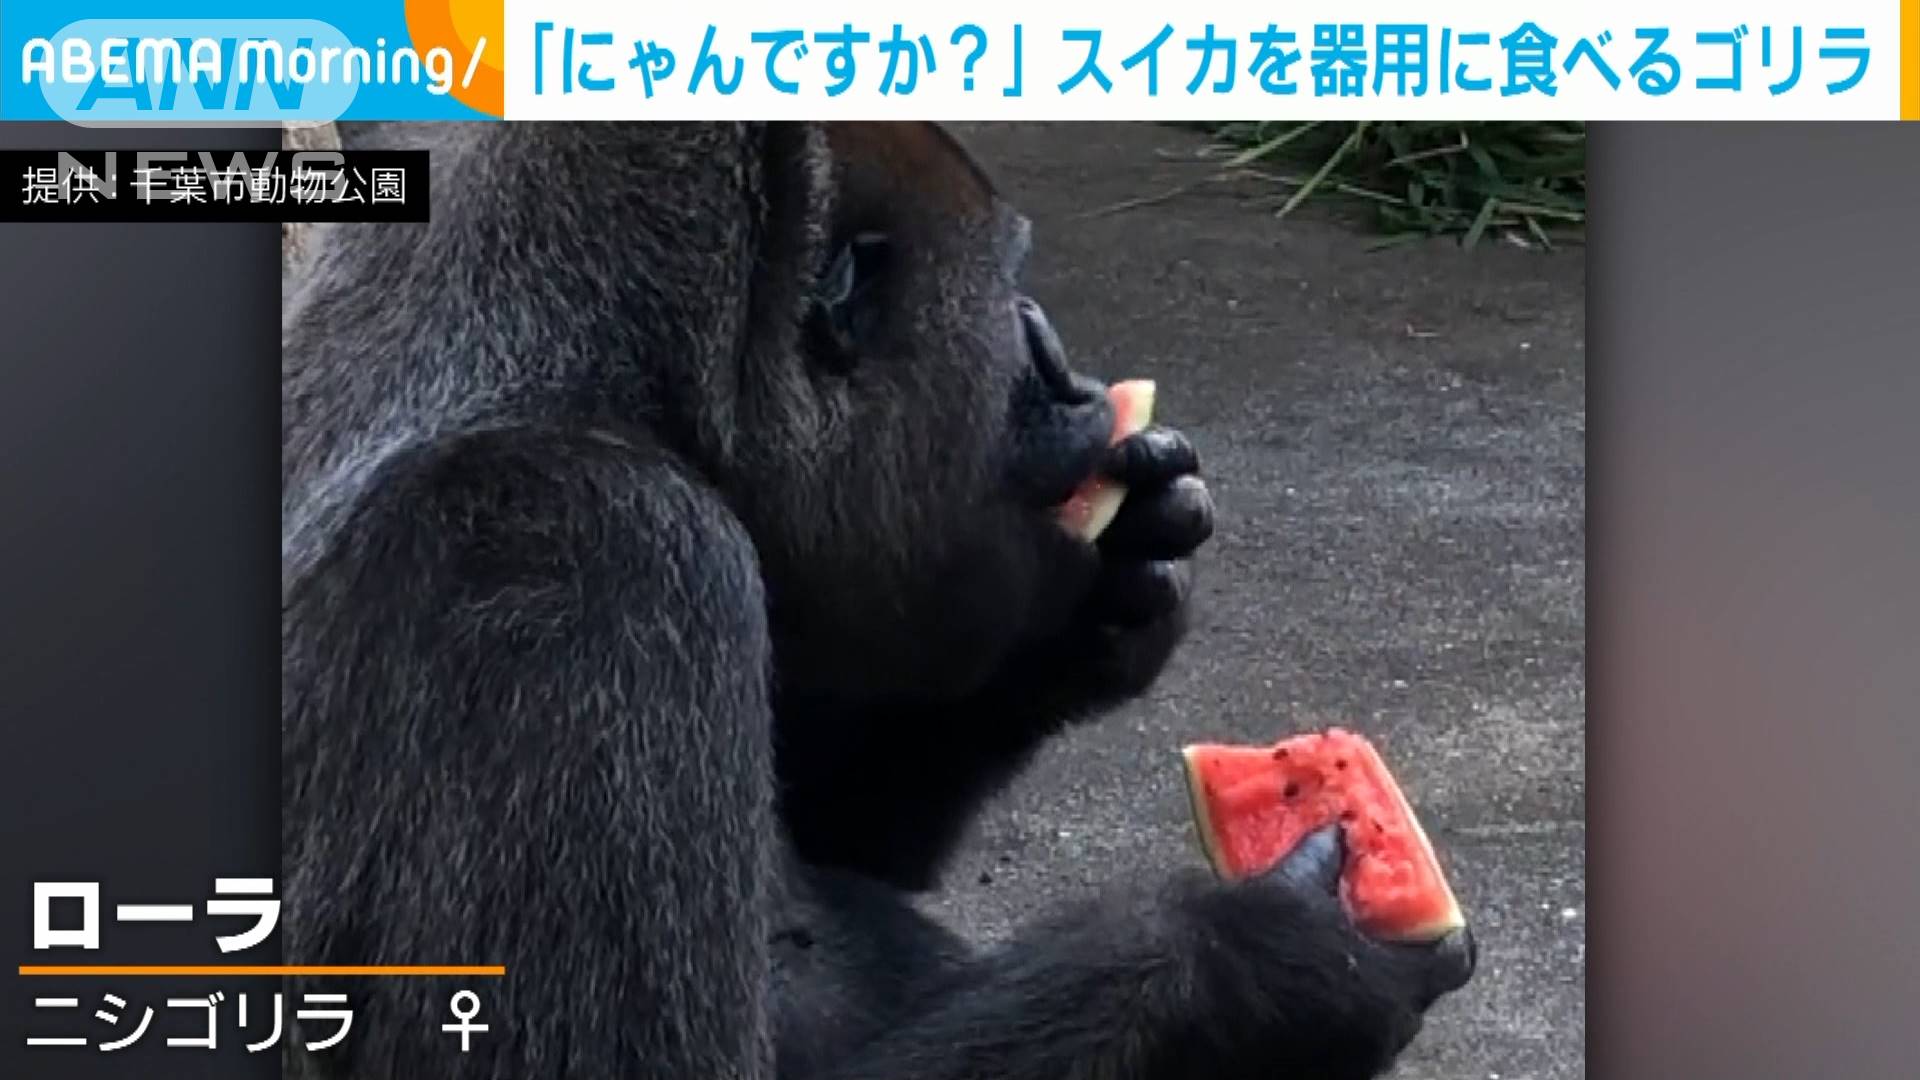 夏はやっぱりコレだ スイカを器用に食べるゴリラ テレ朝news テレビ朝日のニュースサイト